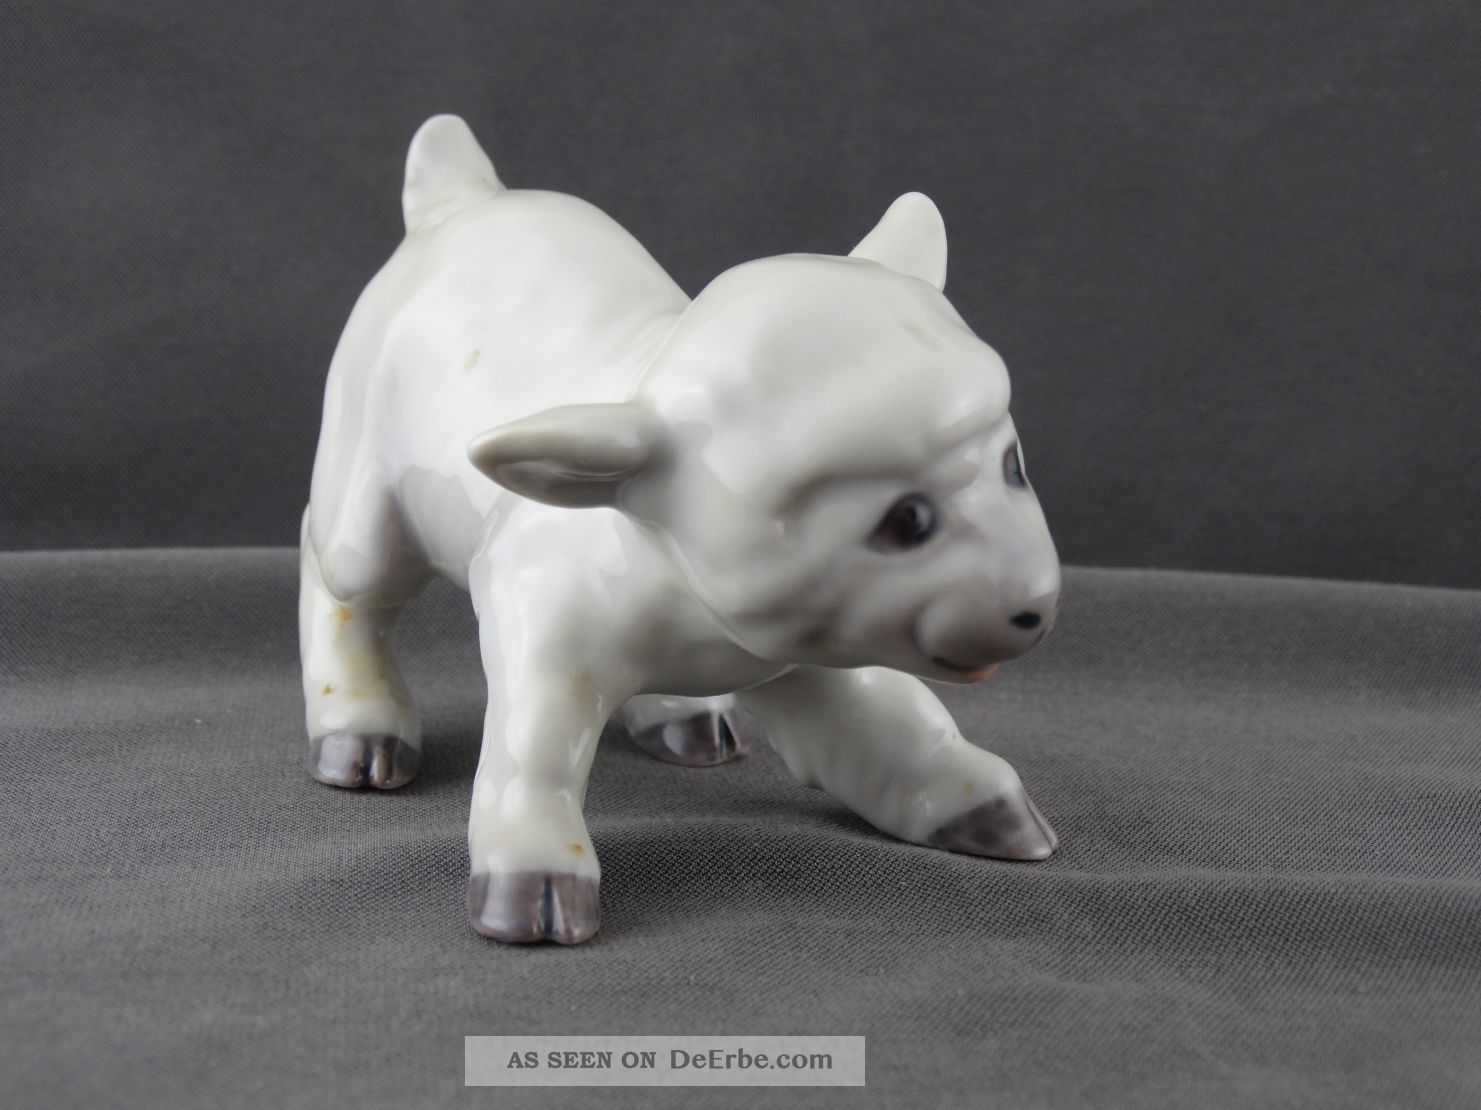 Bing & Groendahl Porzellan Figur Kleines Schaf Lamm Modell 2562 Nach Marke & Herkunft Bild